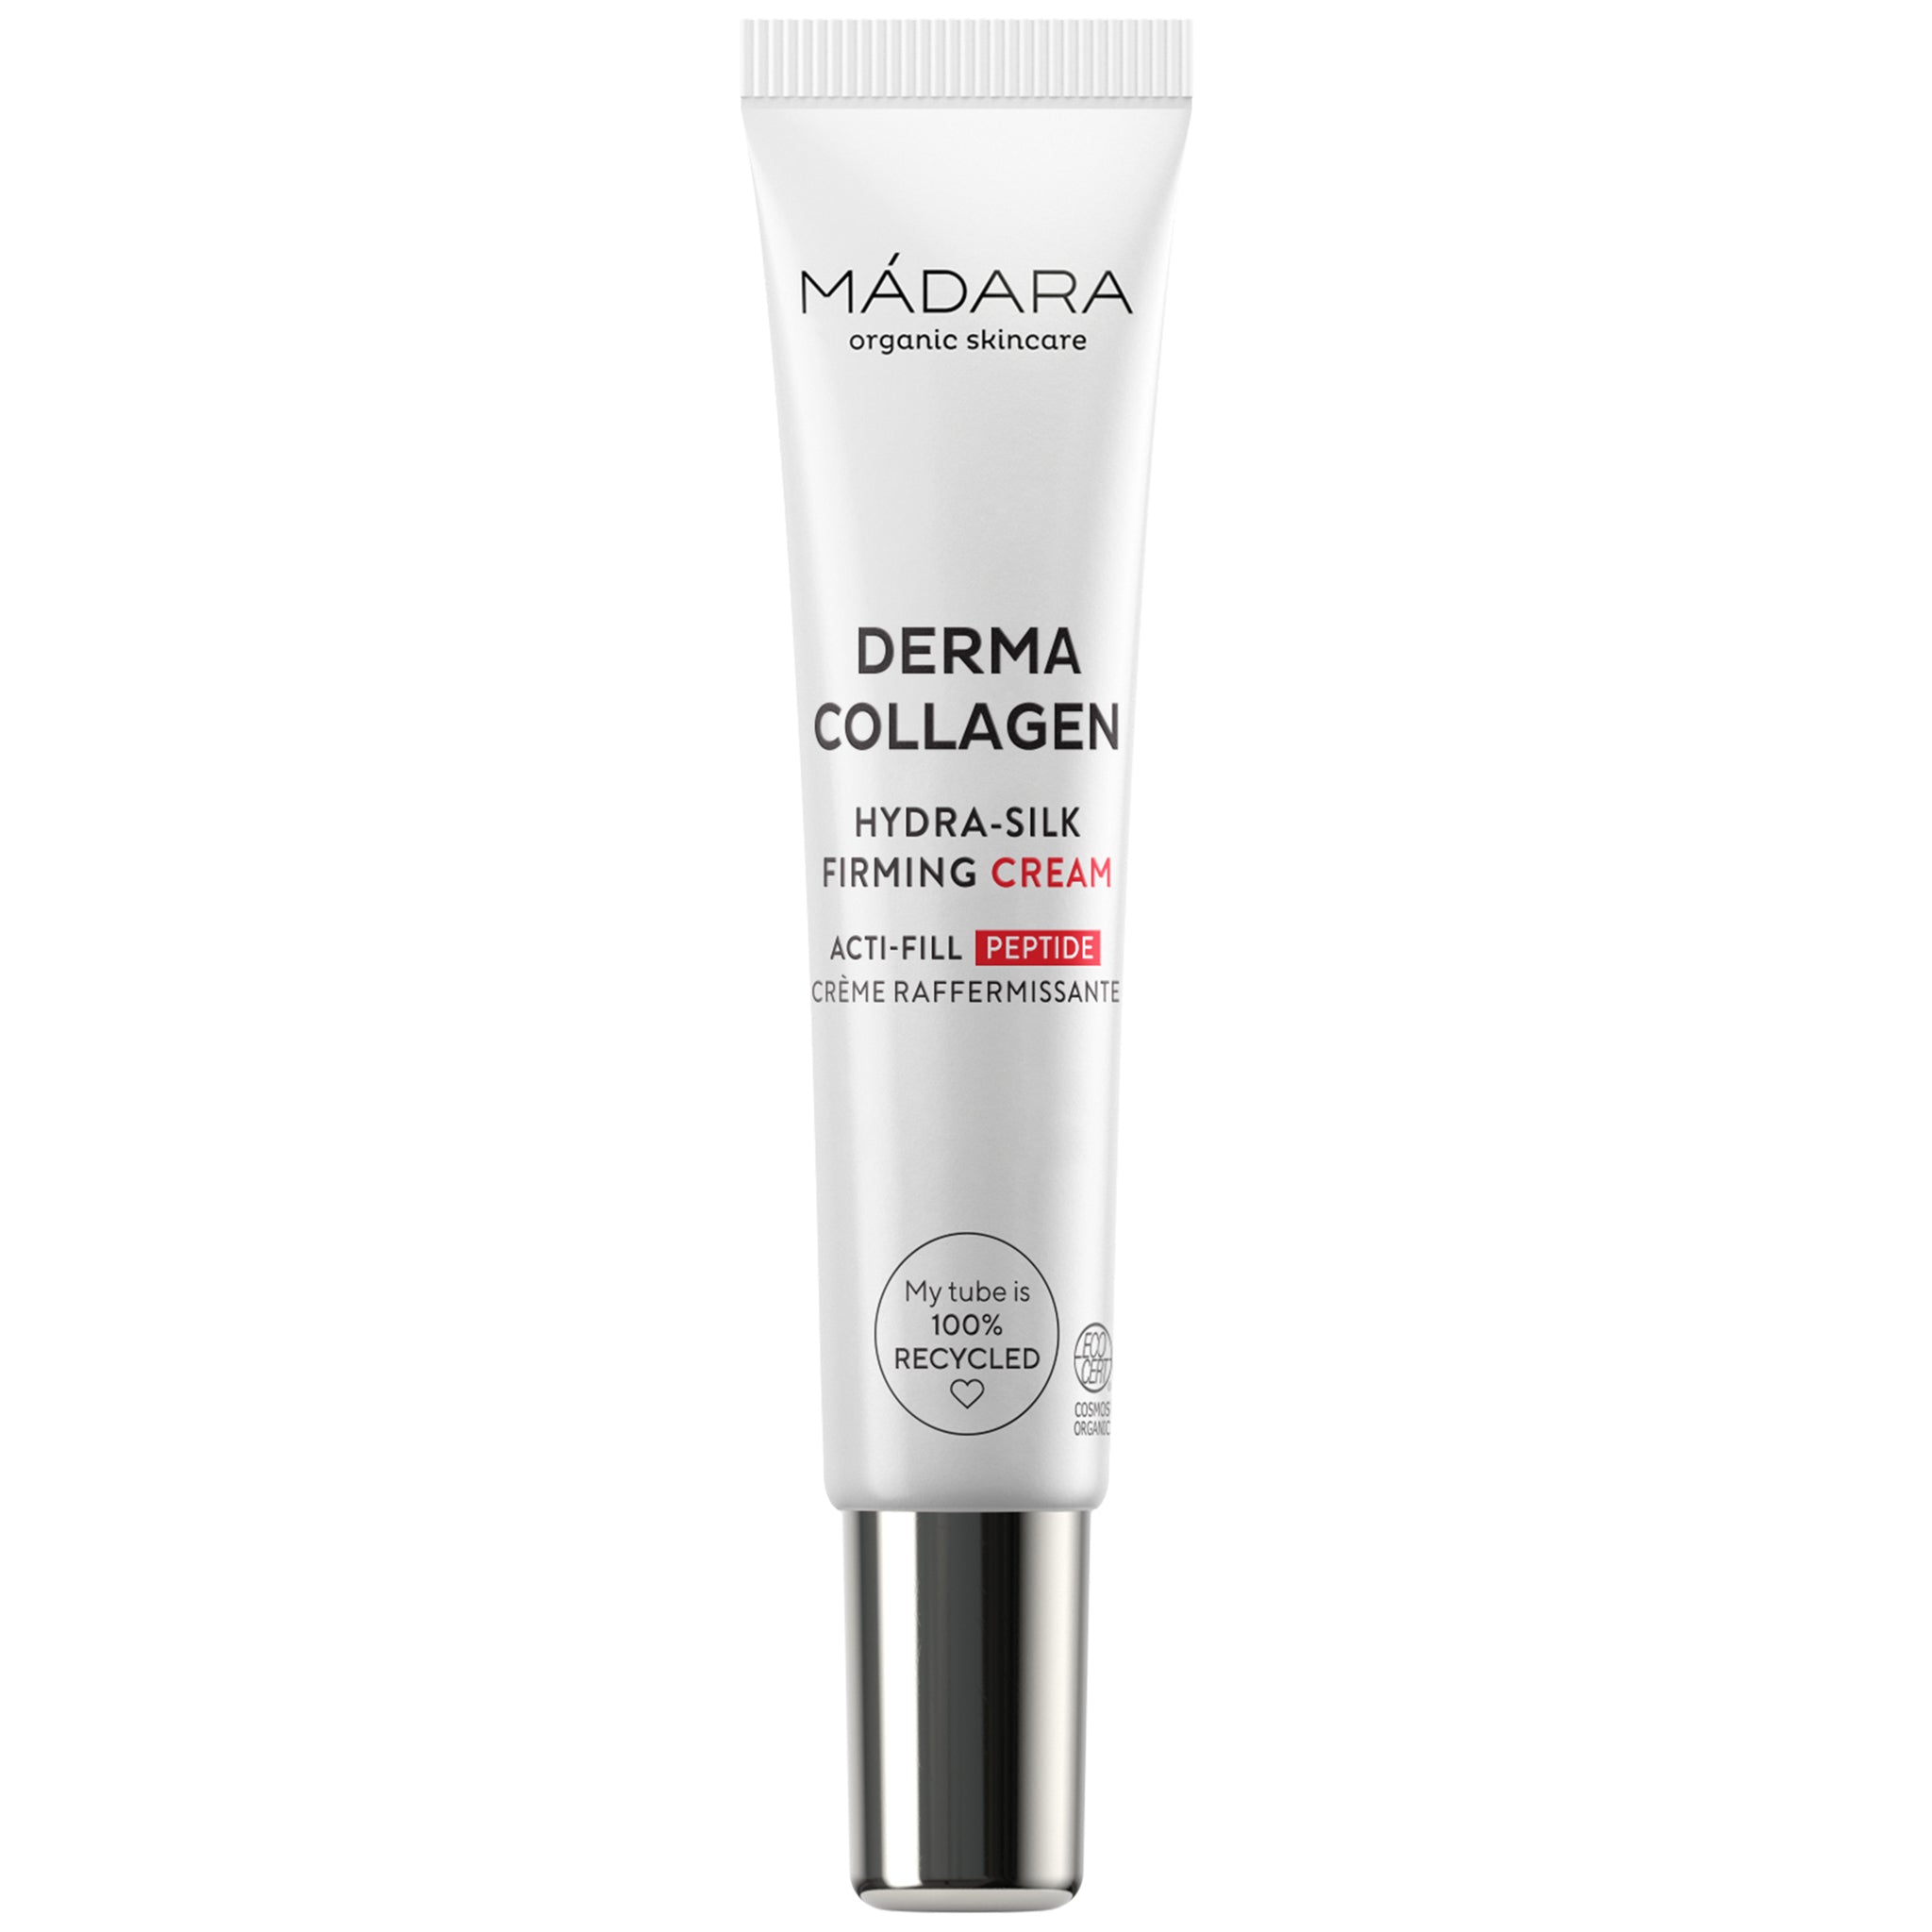 Derma Collagen Hydra-Silk Firming Cream - mypure.co.uk